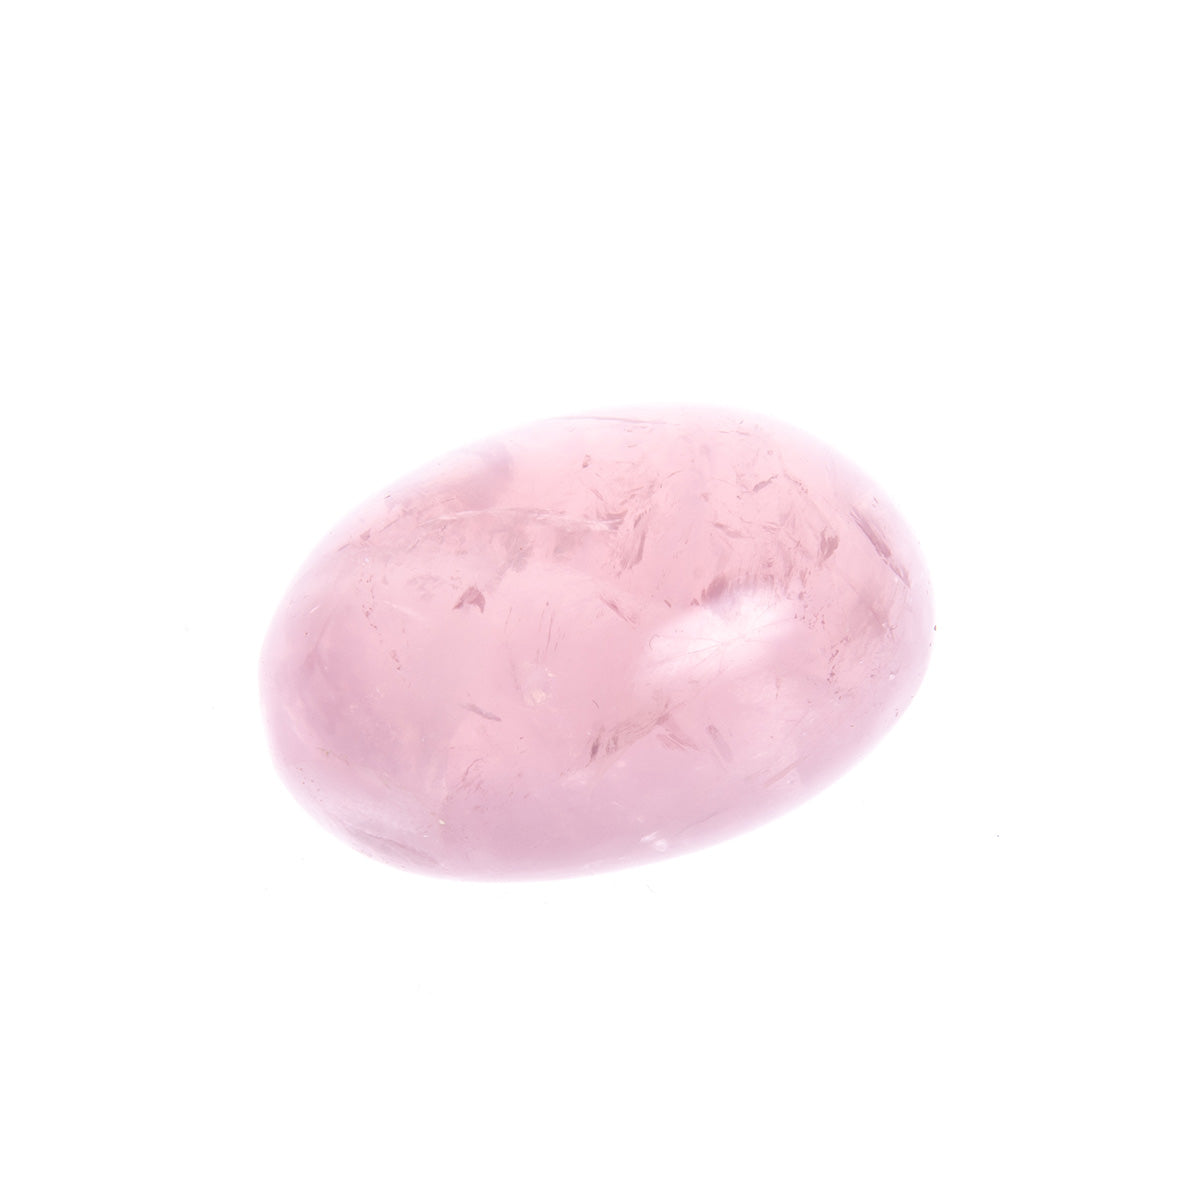 KIT Serenità del cuore - Le Origini pietre dure pietre semipreziose, pietre naturali